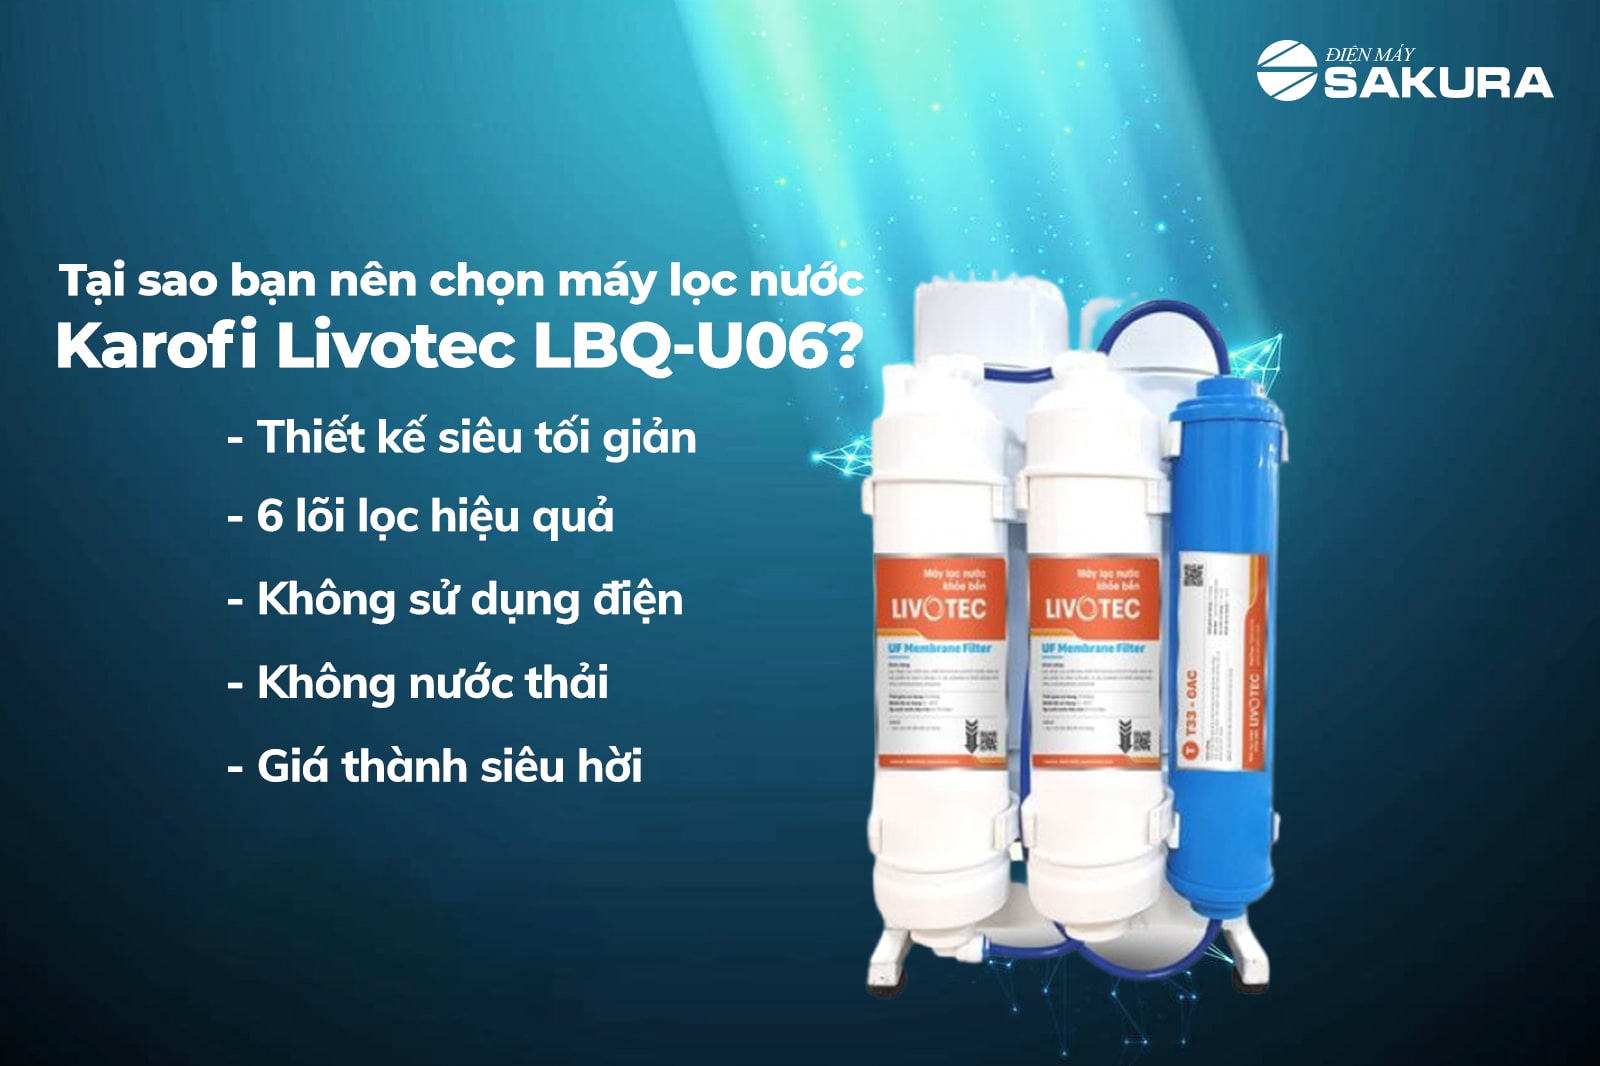 Tại sao bạn nên chọn máy lọc nước Karofi Livotec LBQ-U06? 